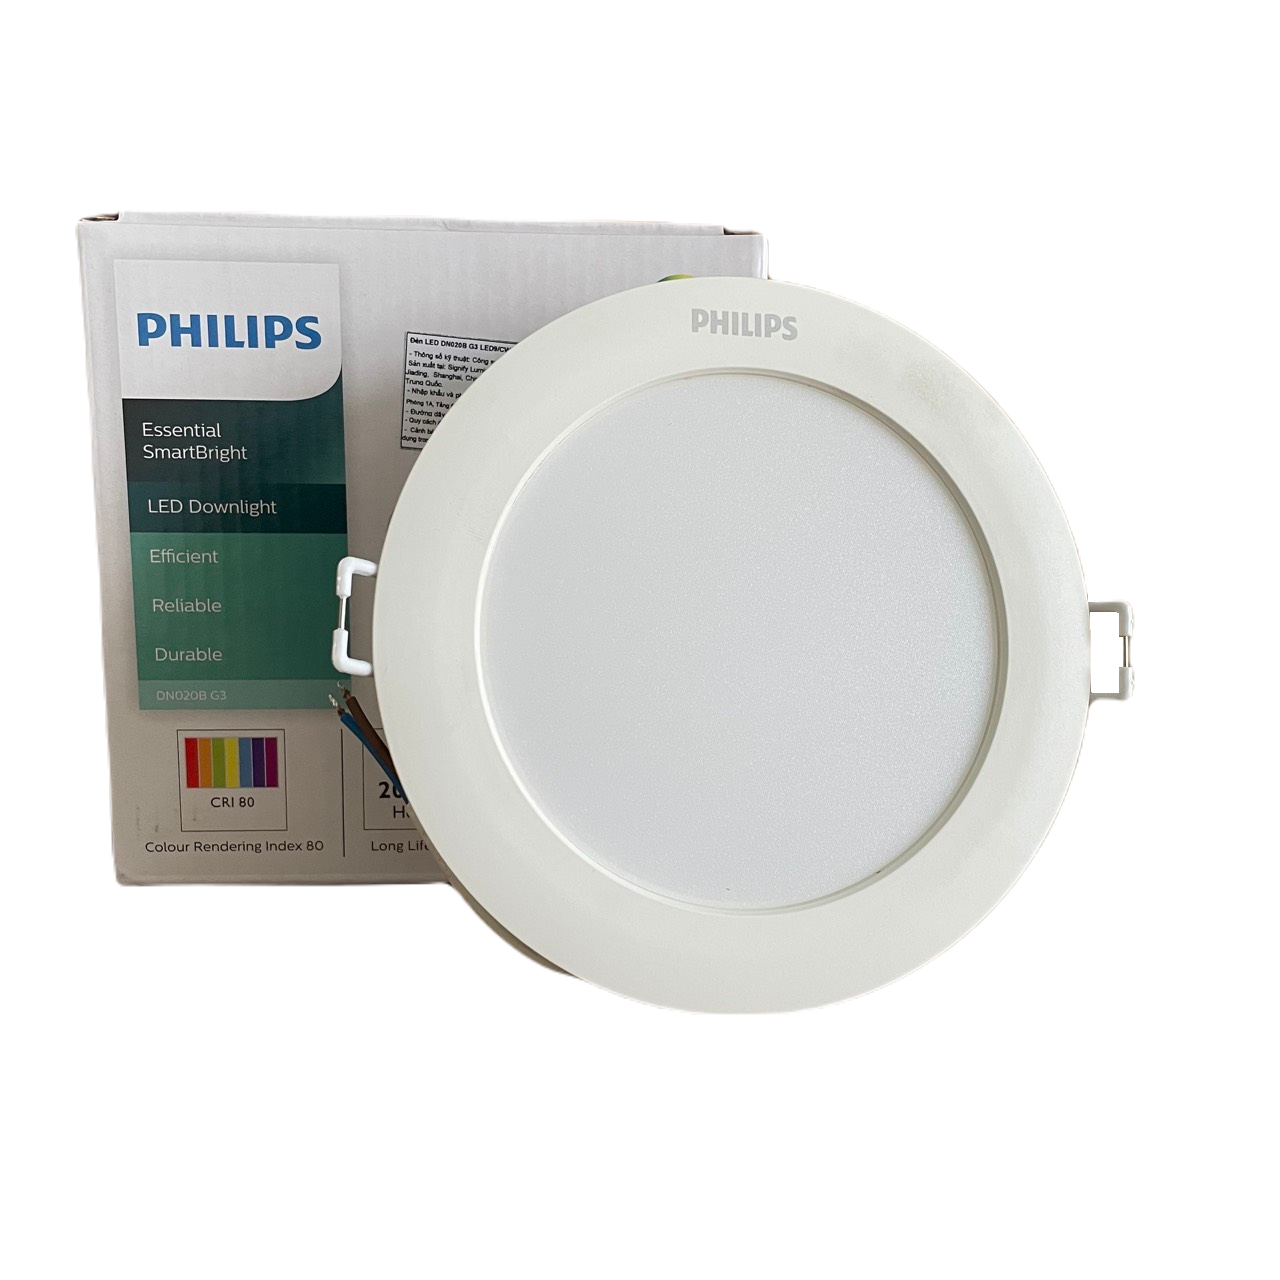 Đèn downlight âm trần LED Philips Essential SmartBright DN020B G3 LED15/WW 18W 220-240V D175 GM